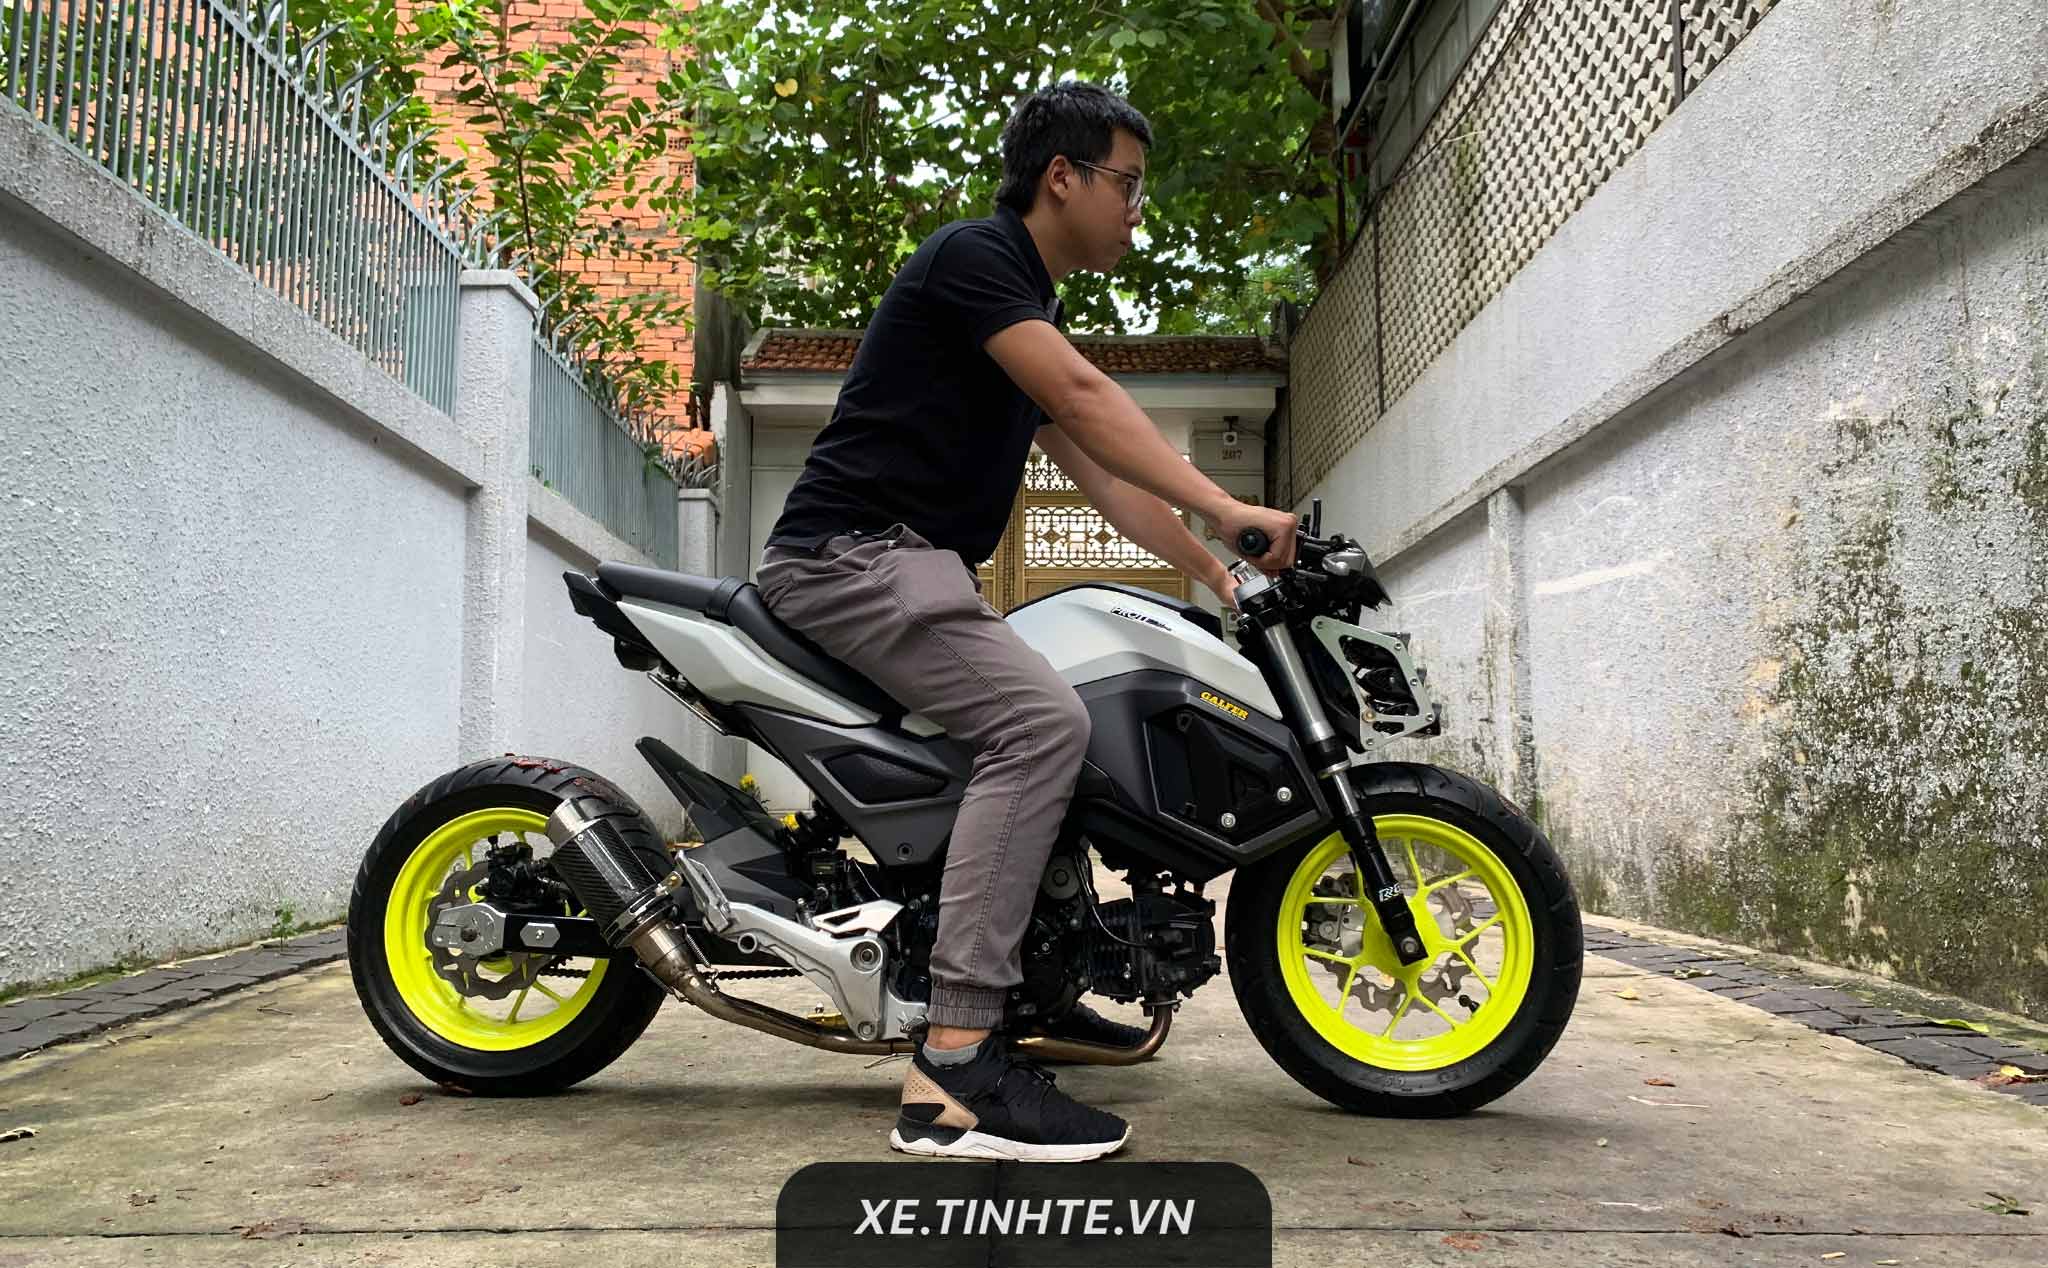 Review Xe HONDA MSX Điện Có Tay Côn Và Hộp Số Đầu Tiên Tại Việt Nam  Hưng Xe  Điện  YouTube